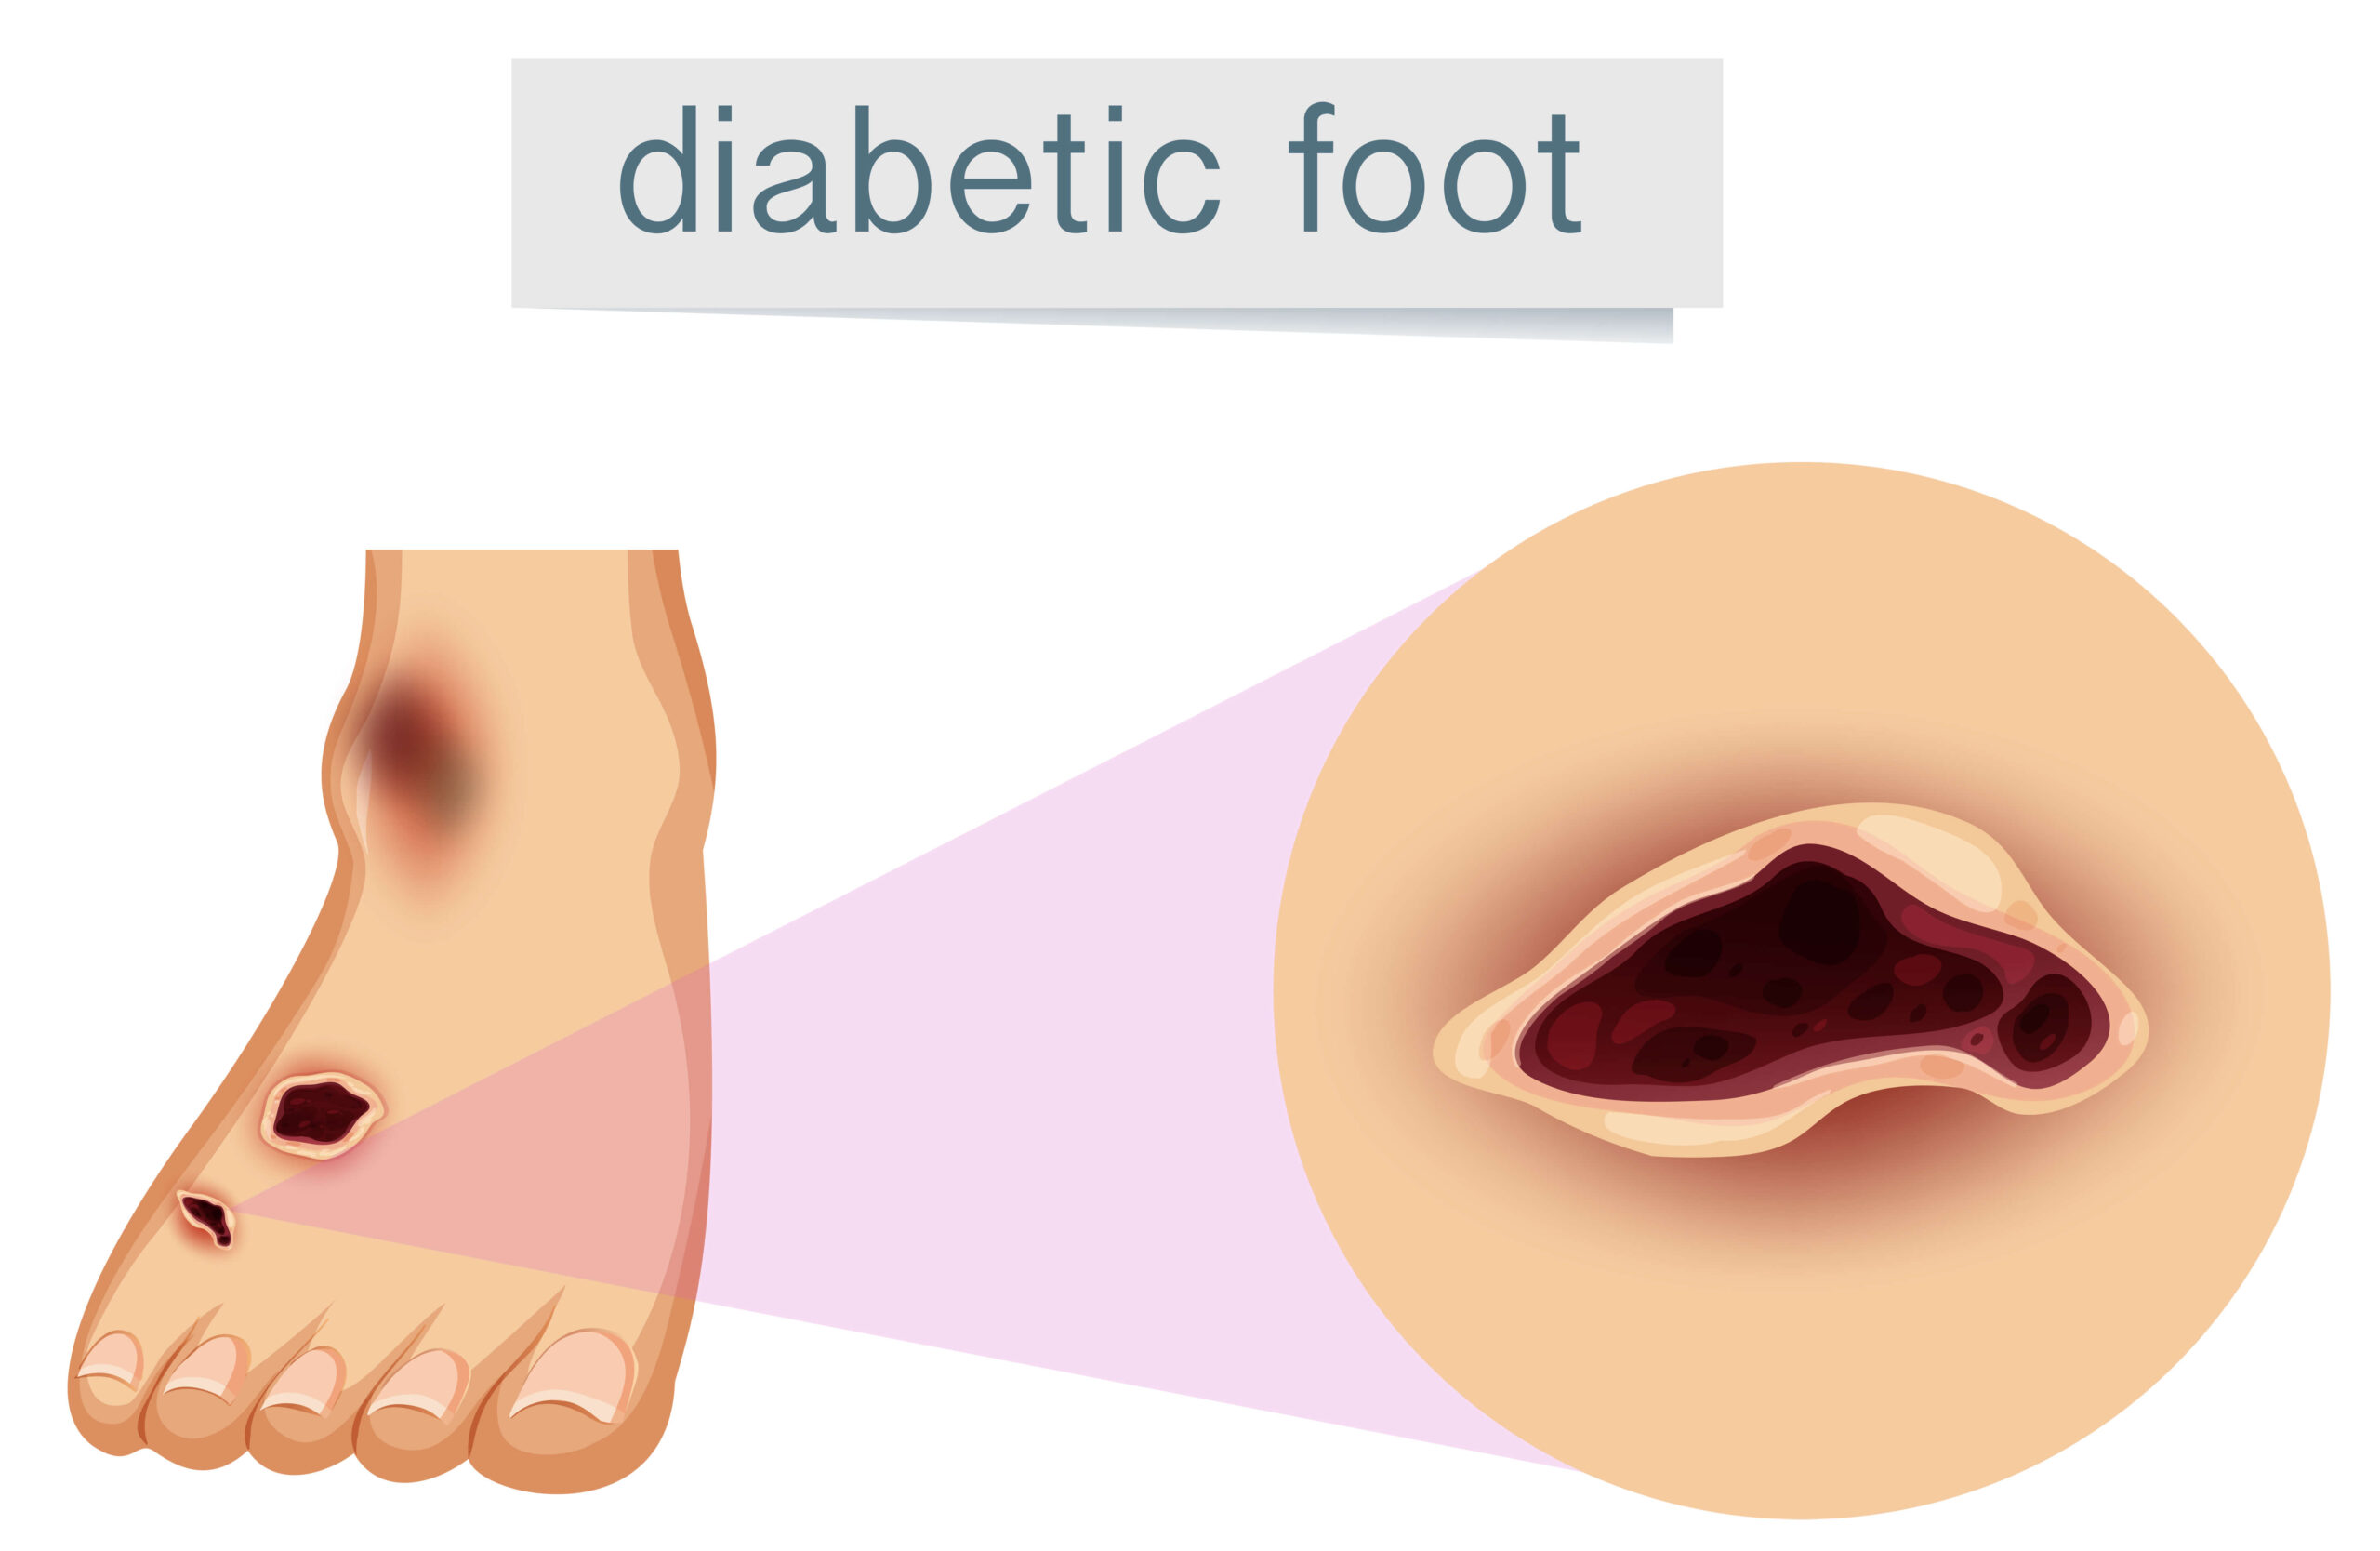 diabetic foot